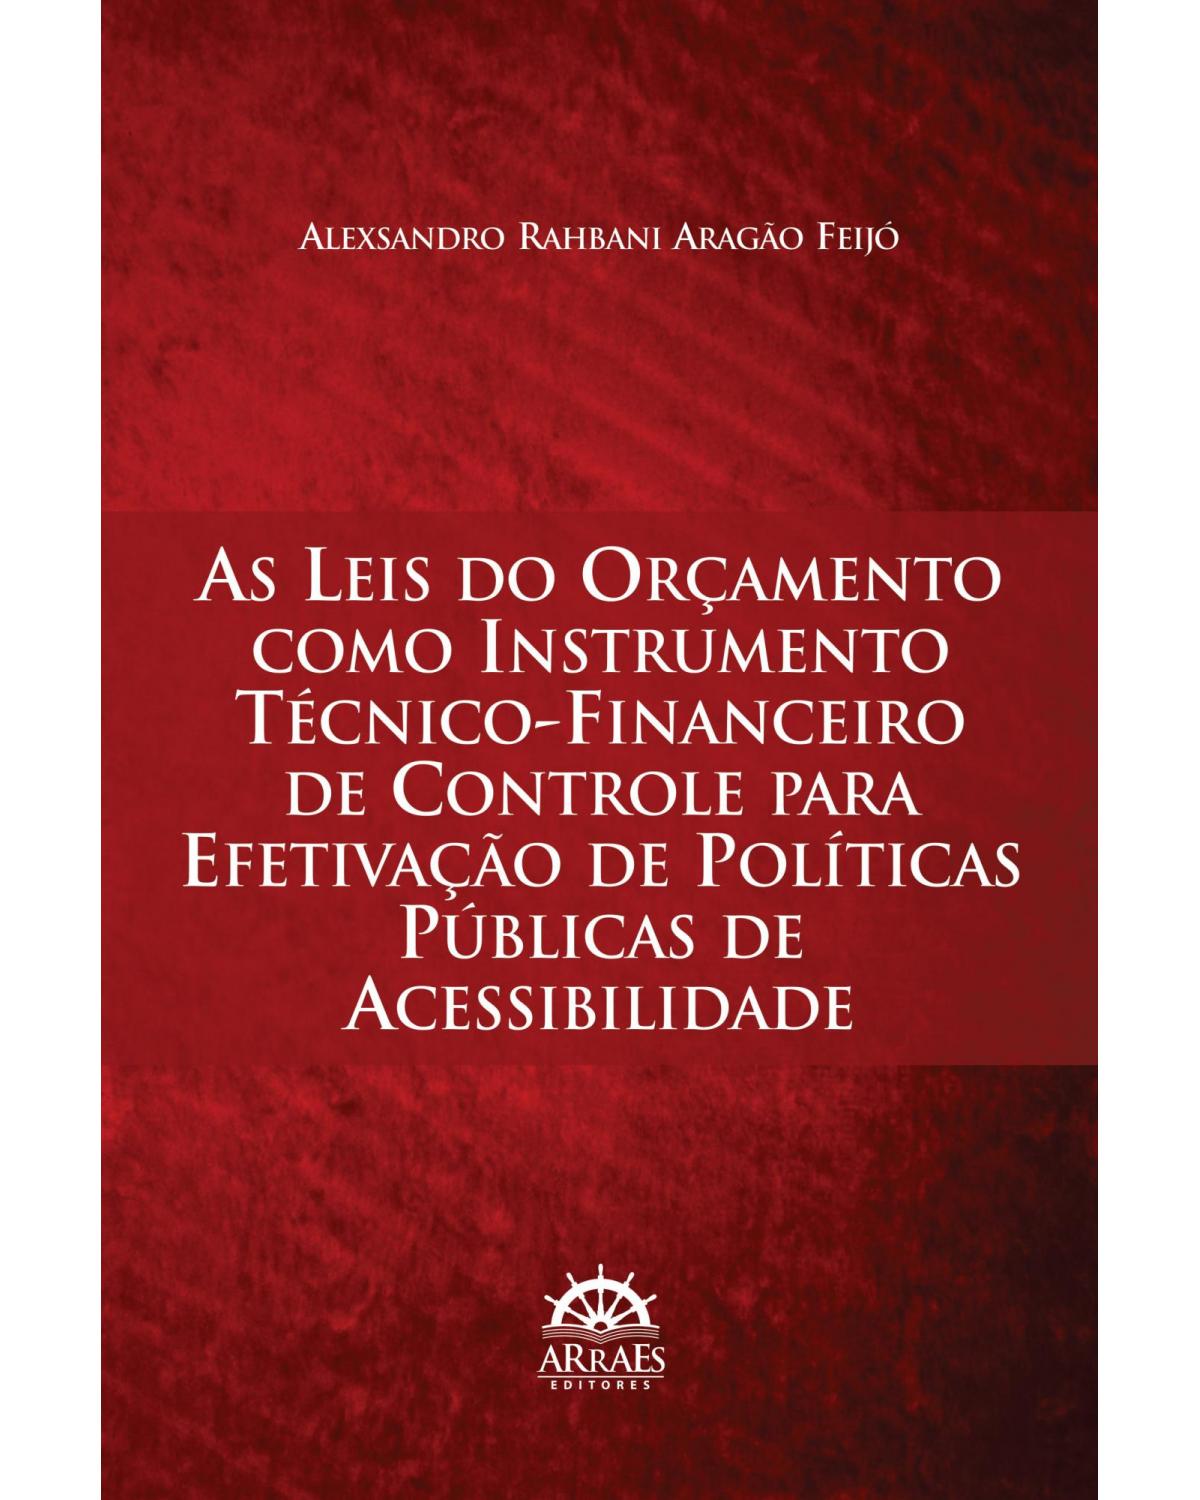 As leis do orçamento como instrumento técnico-financeiro de controle para efetivação de políticas públicas de acessibilidade - 1ª Edição | 2013